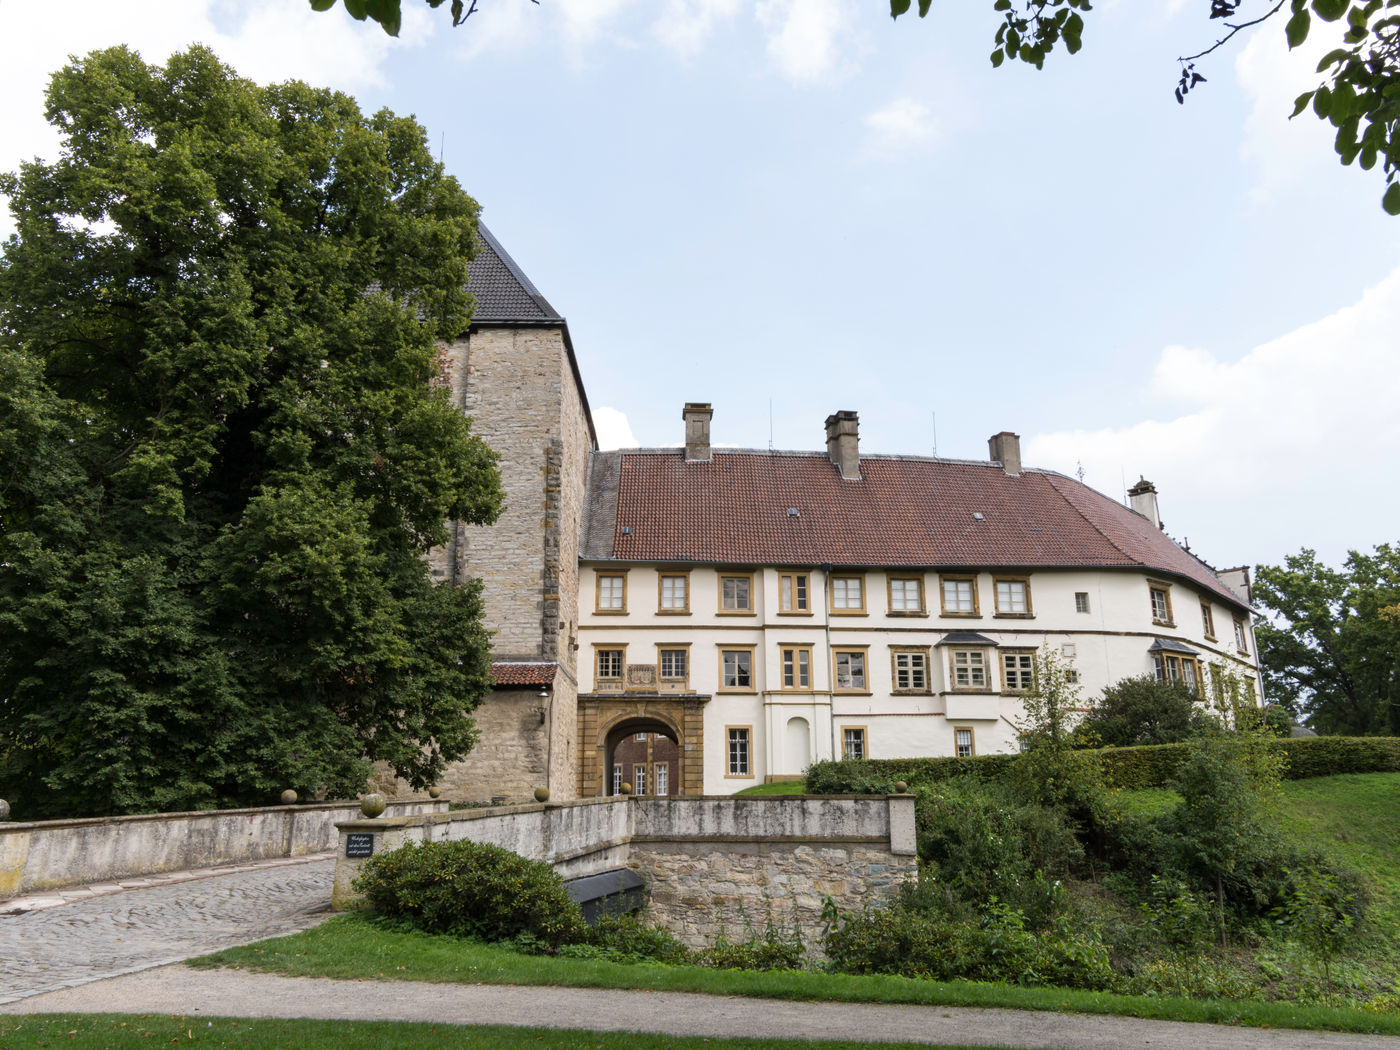 Historische Entdeckungstour durch ein majestätisches Schloss und seine Gärten